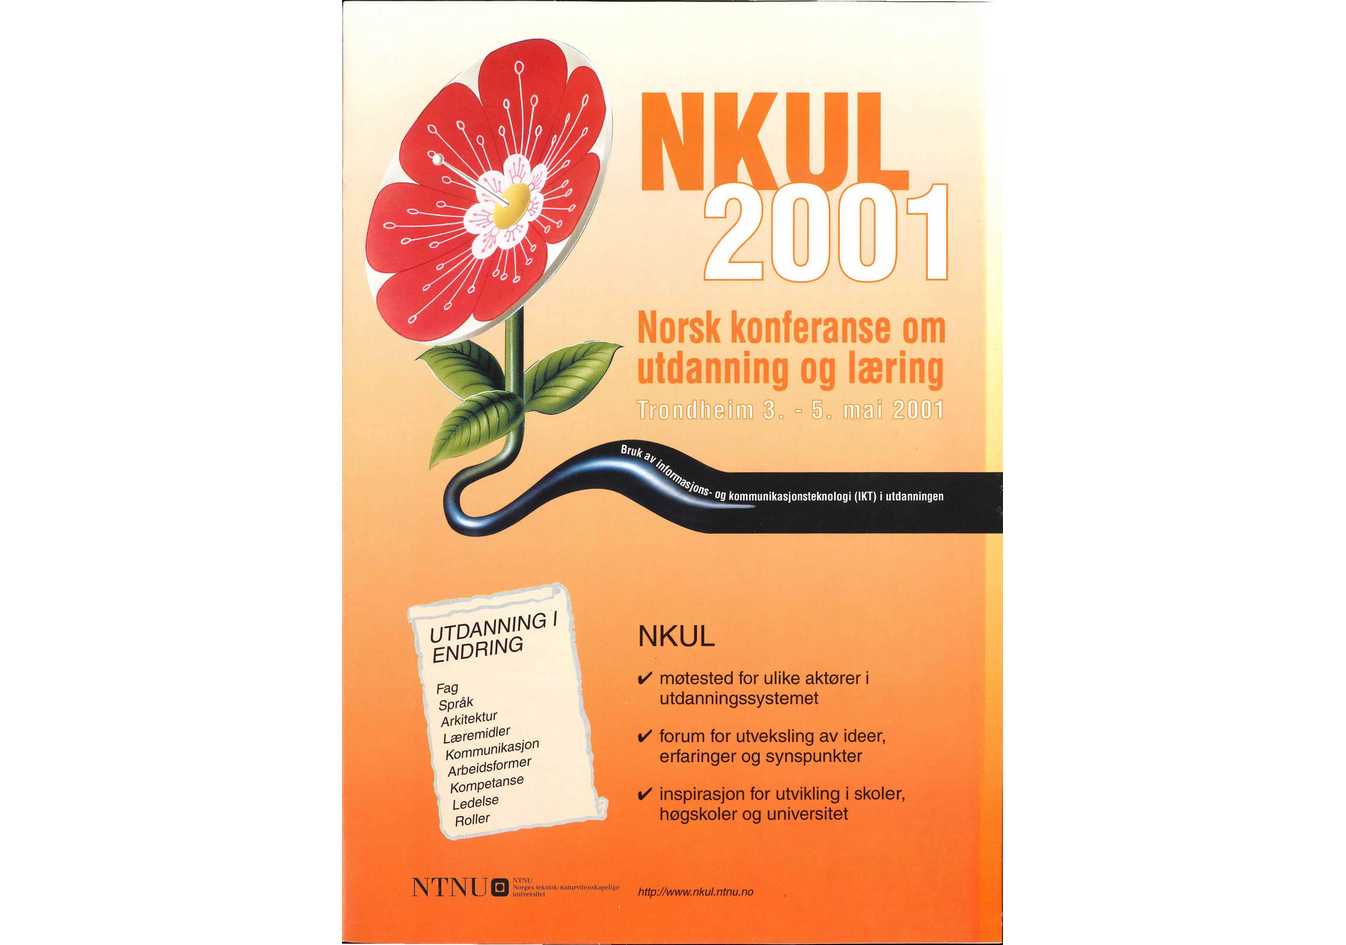 NKUL 2001